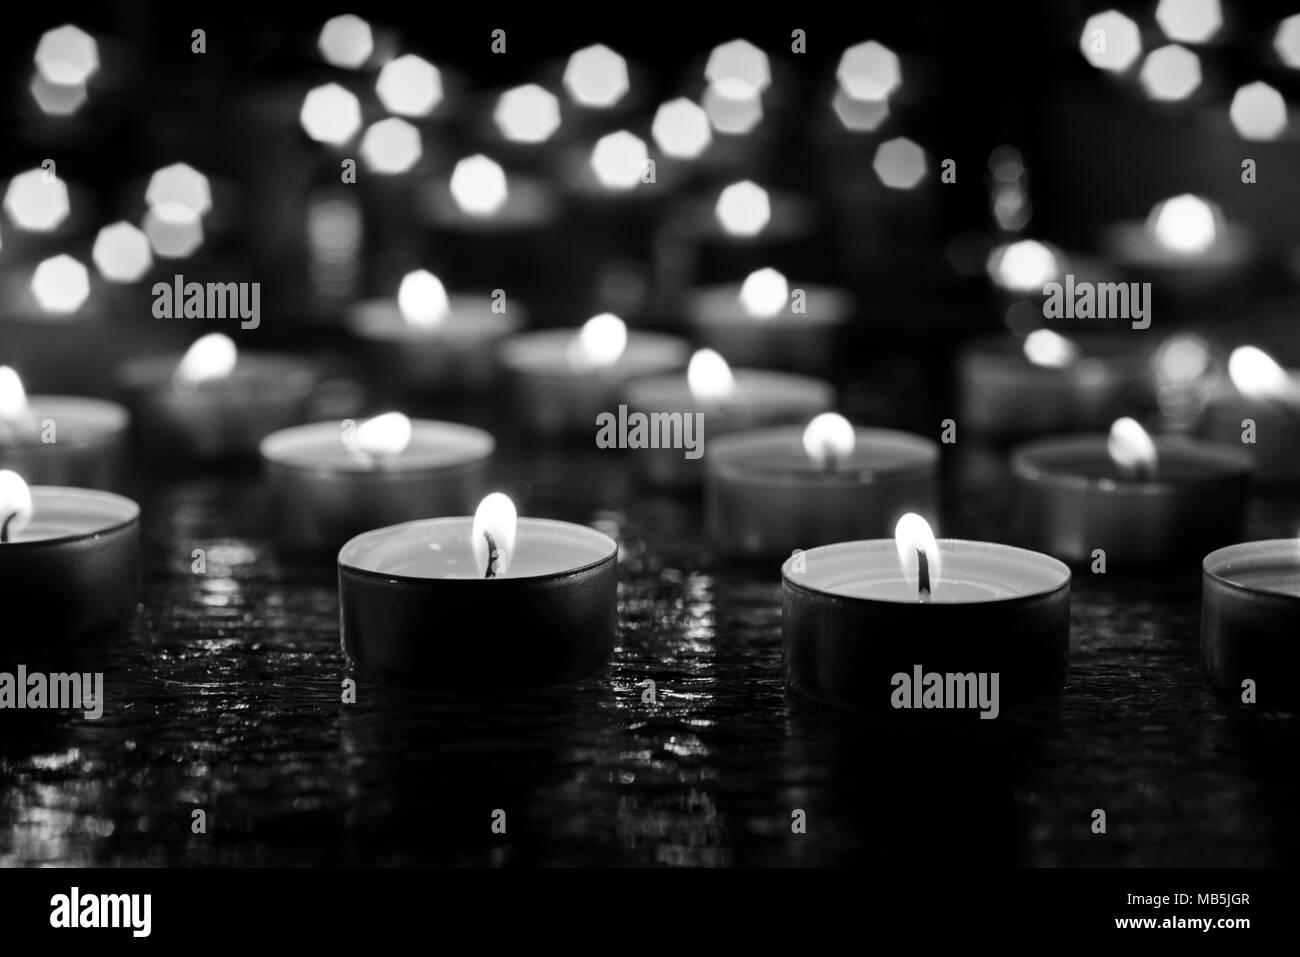 Ébavurage de bougies sur du verre décoratif. Fond sombre. Résumé photo. Banque D'Images